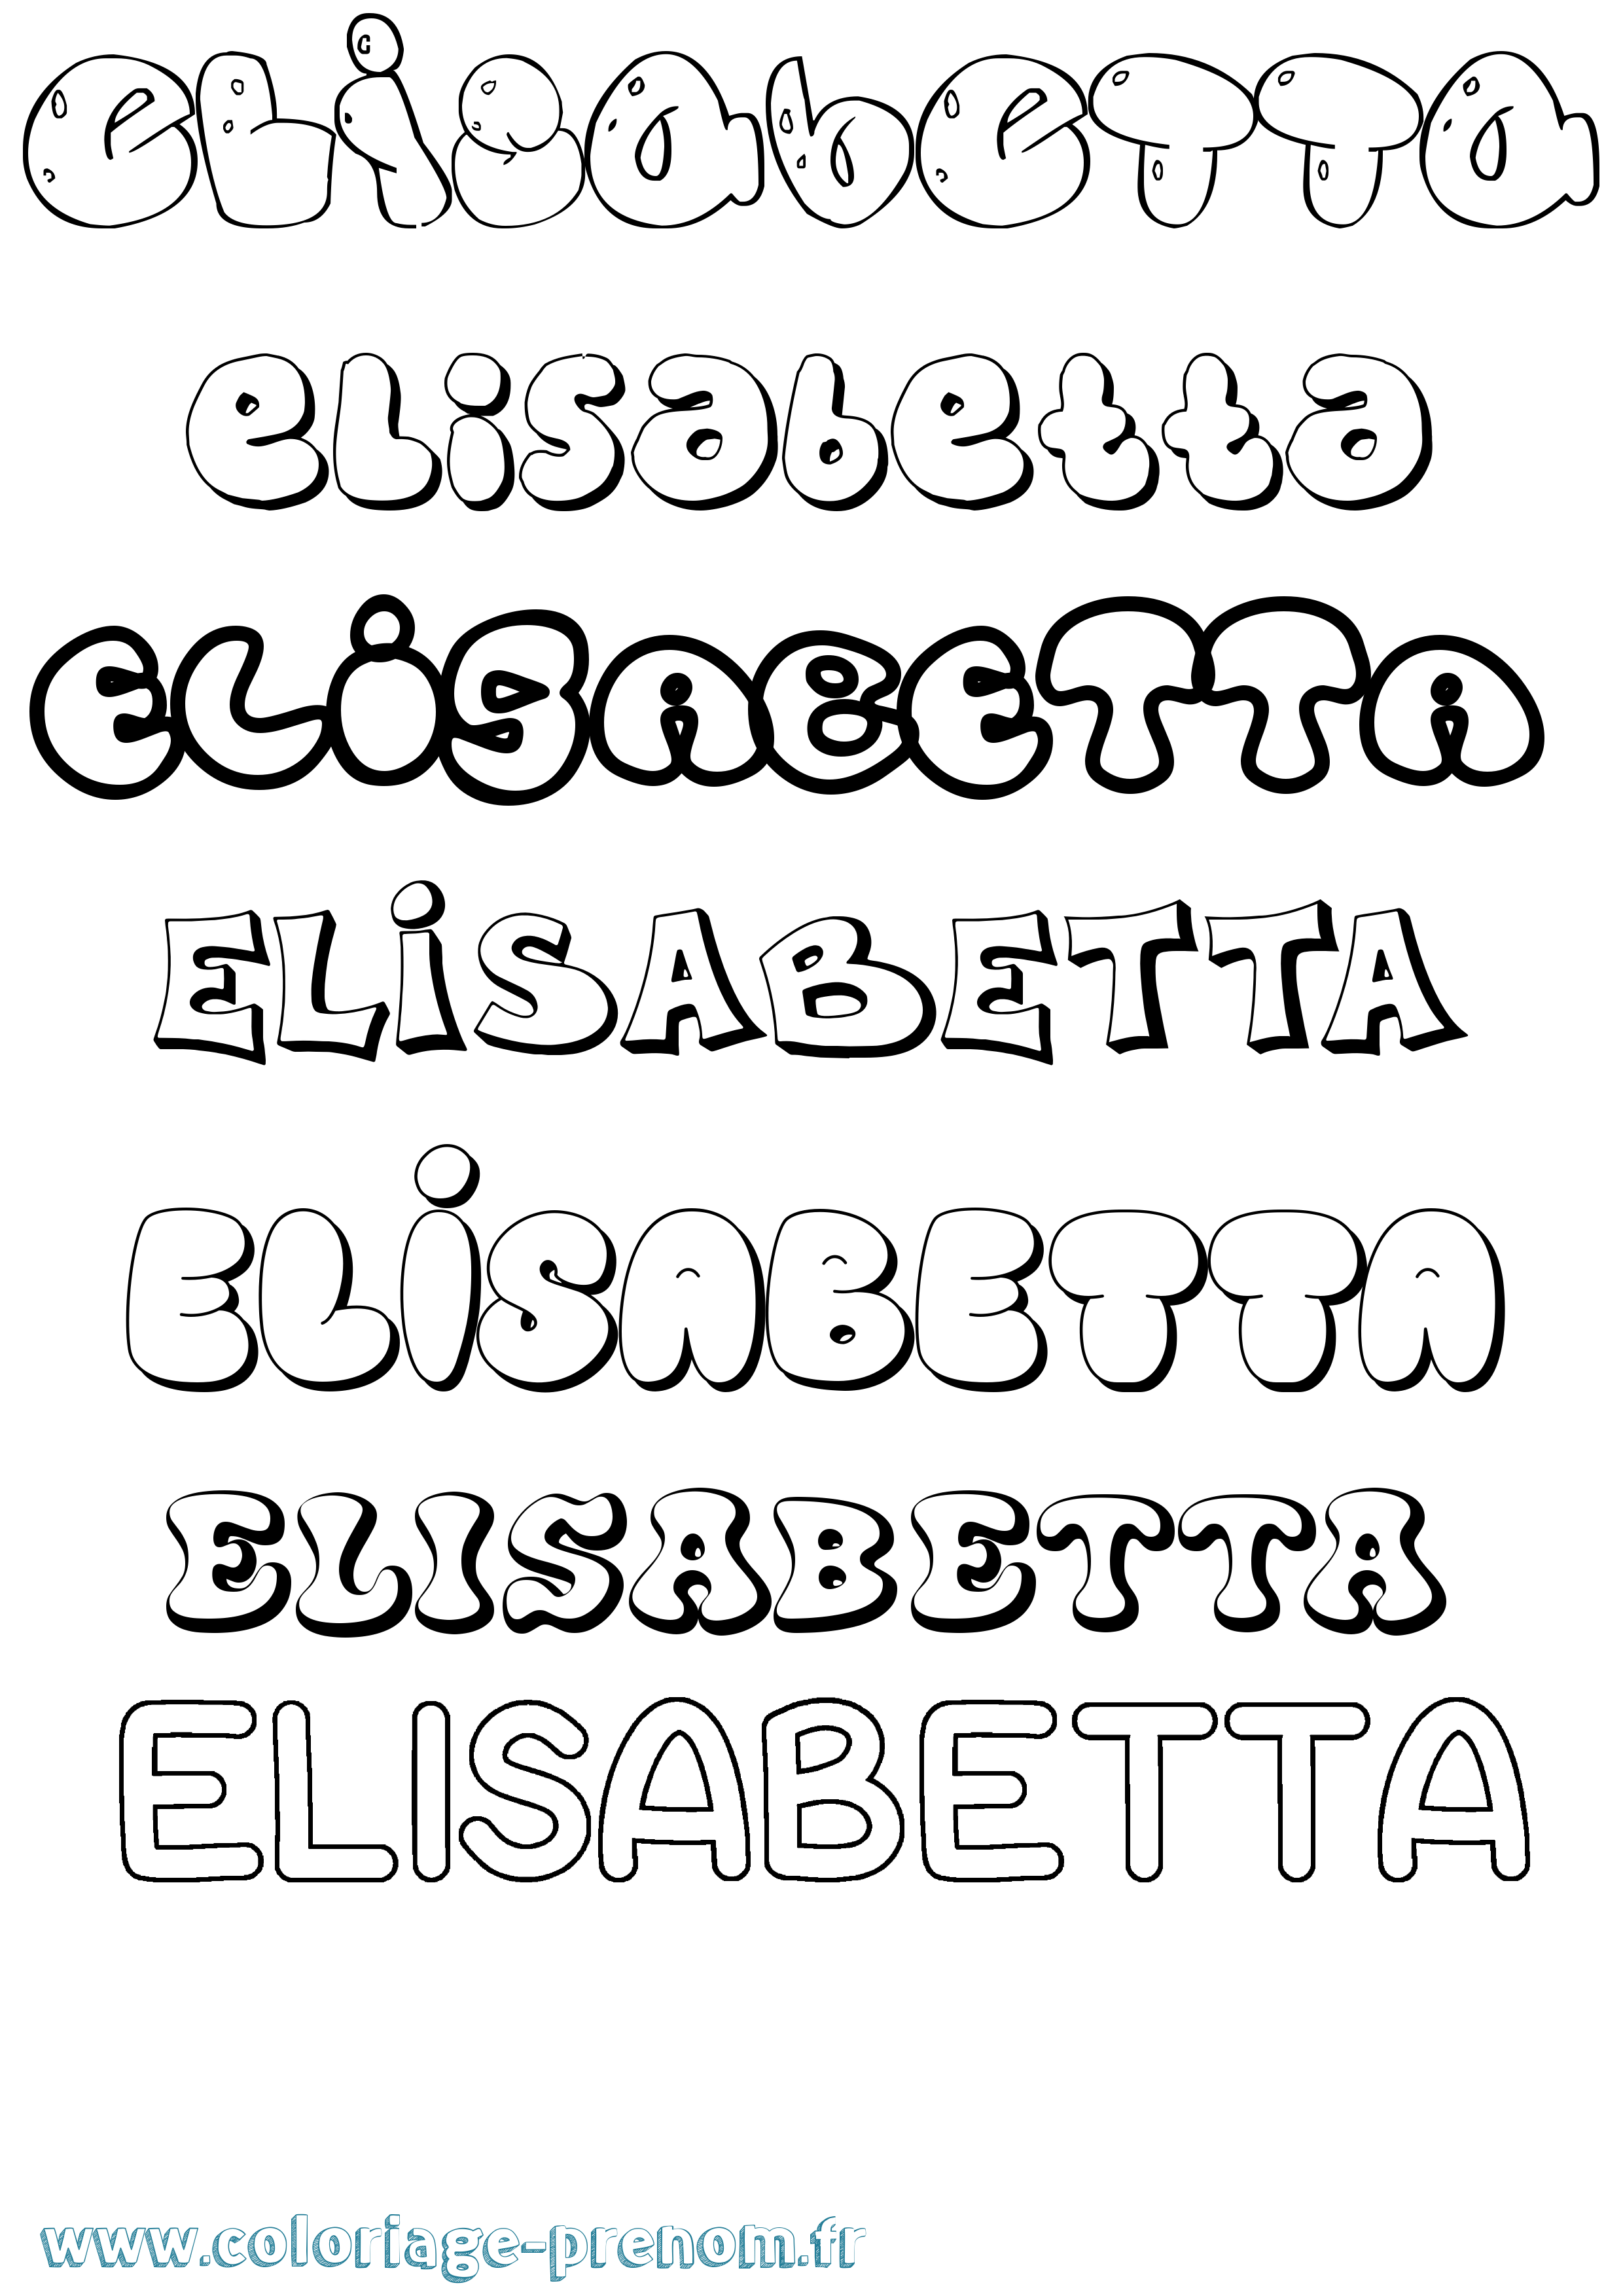 Coloriage prénom Elisabetta Bubble